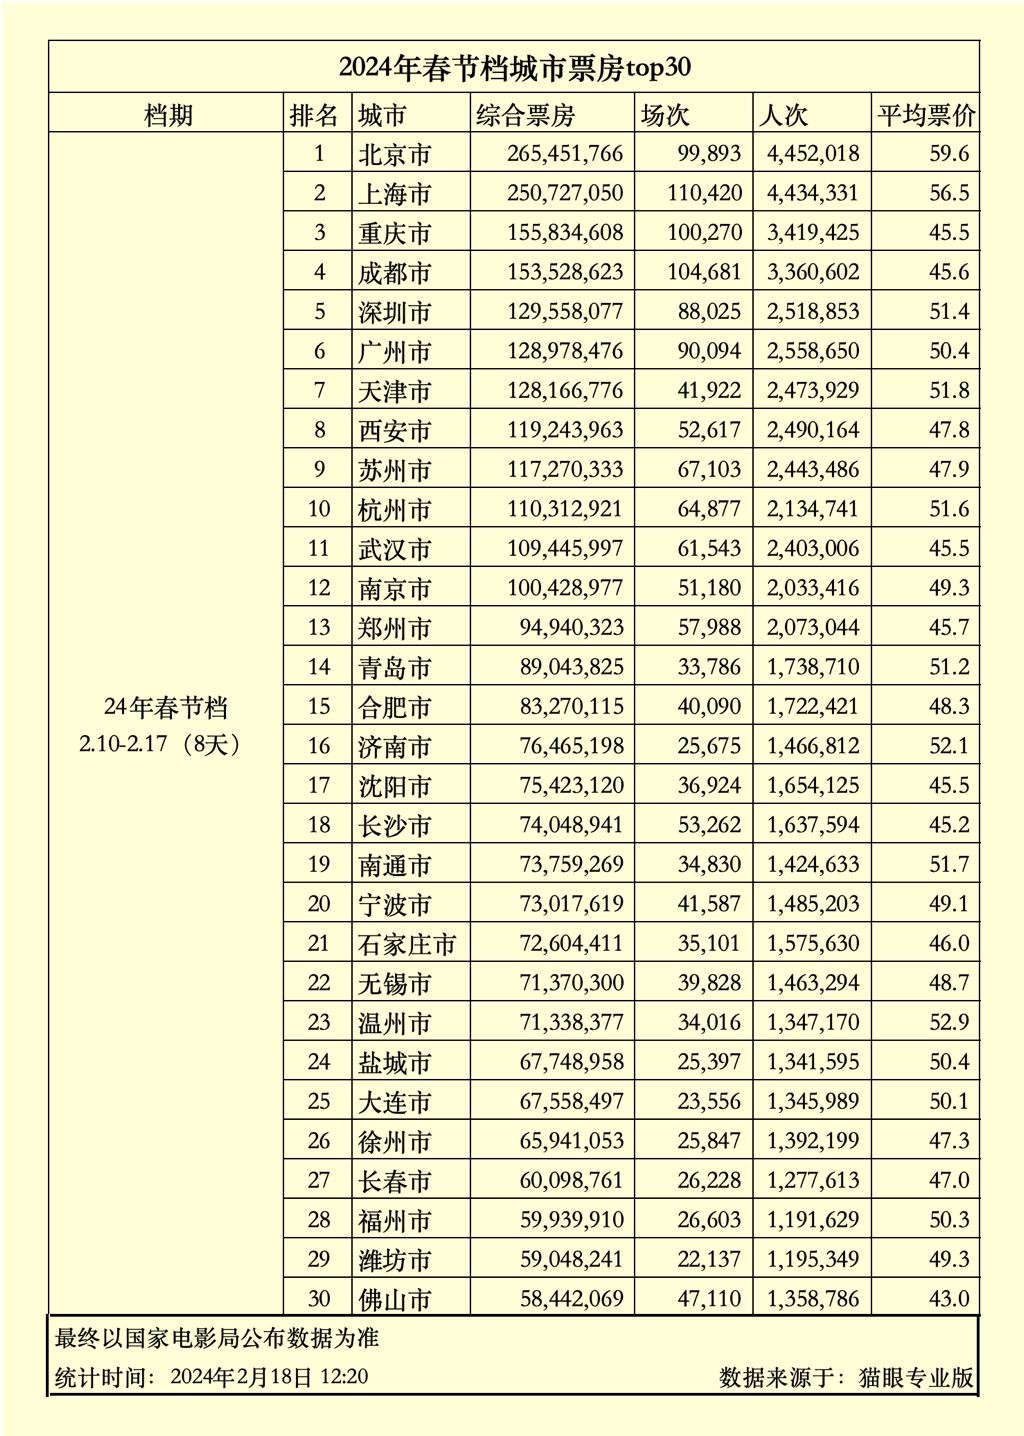 重庆城市票房位列全国第三。猫眼专业版供图